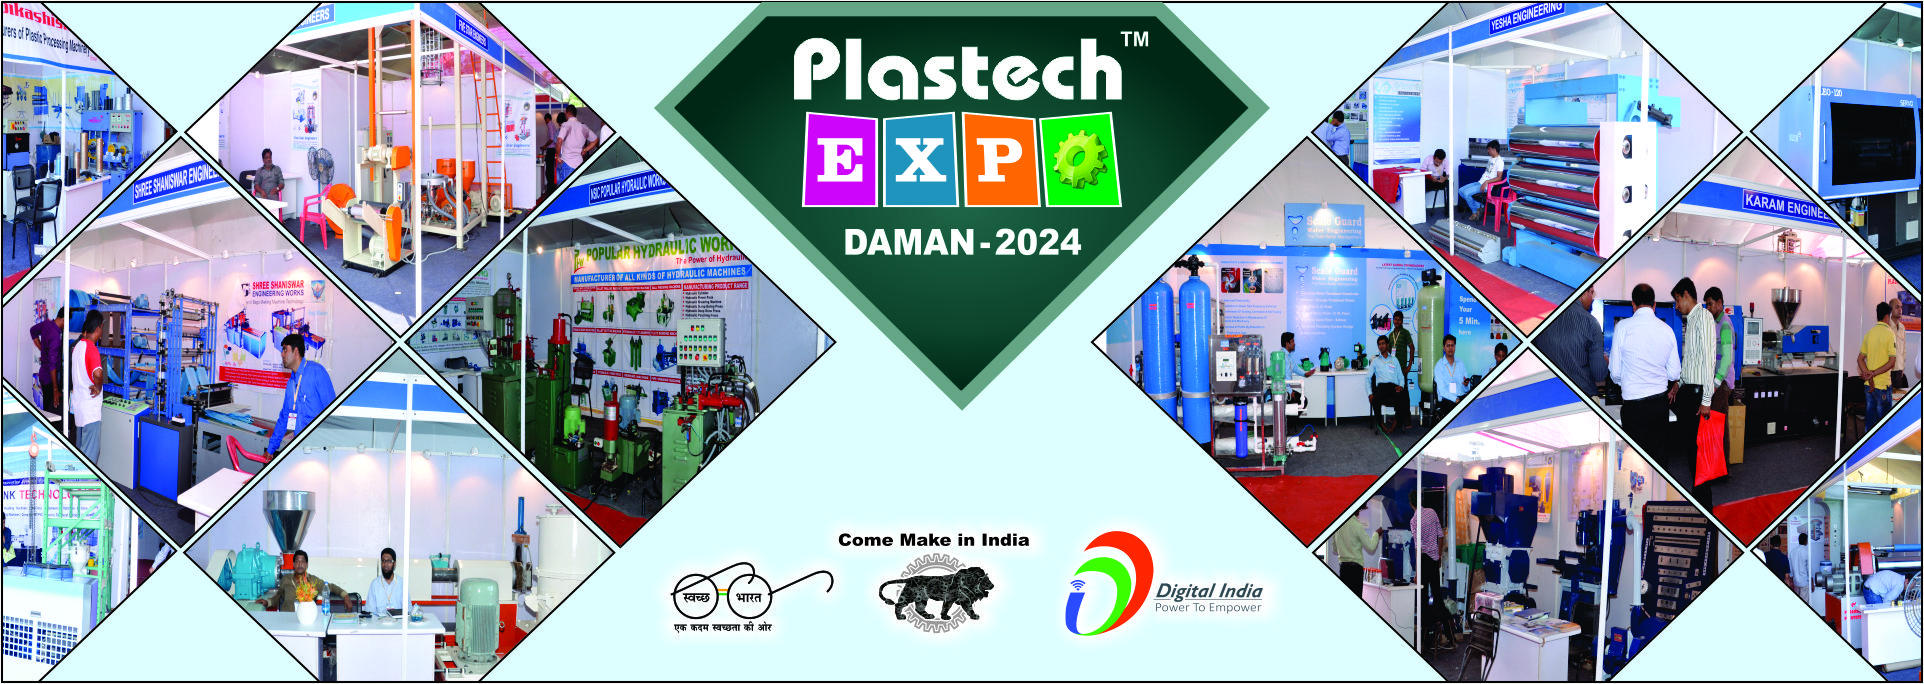 PLASTECH EXPO DAMAN 2024 Plastic Exhibition & Trade Fair